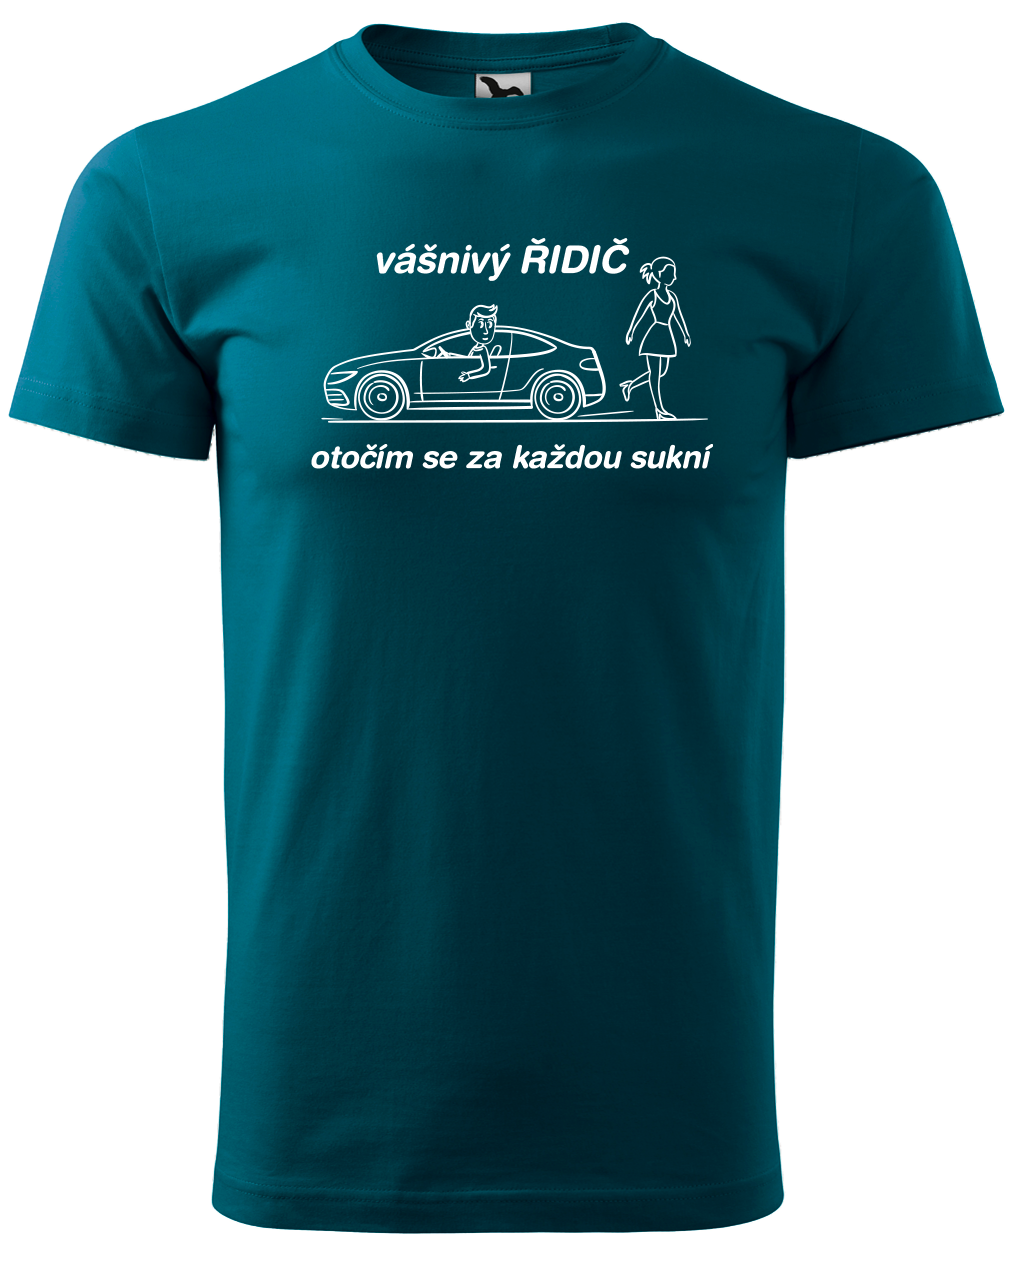 Vtipné tričko pro řidiče - Vášnivý řidič Velikost: XL, Barva: Petrolejová (93)